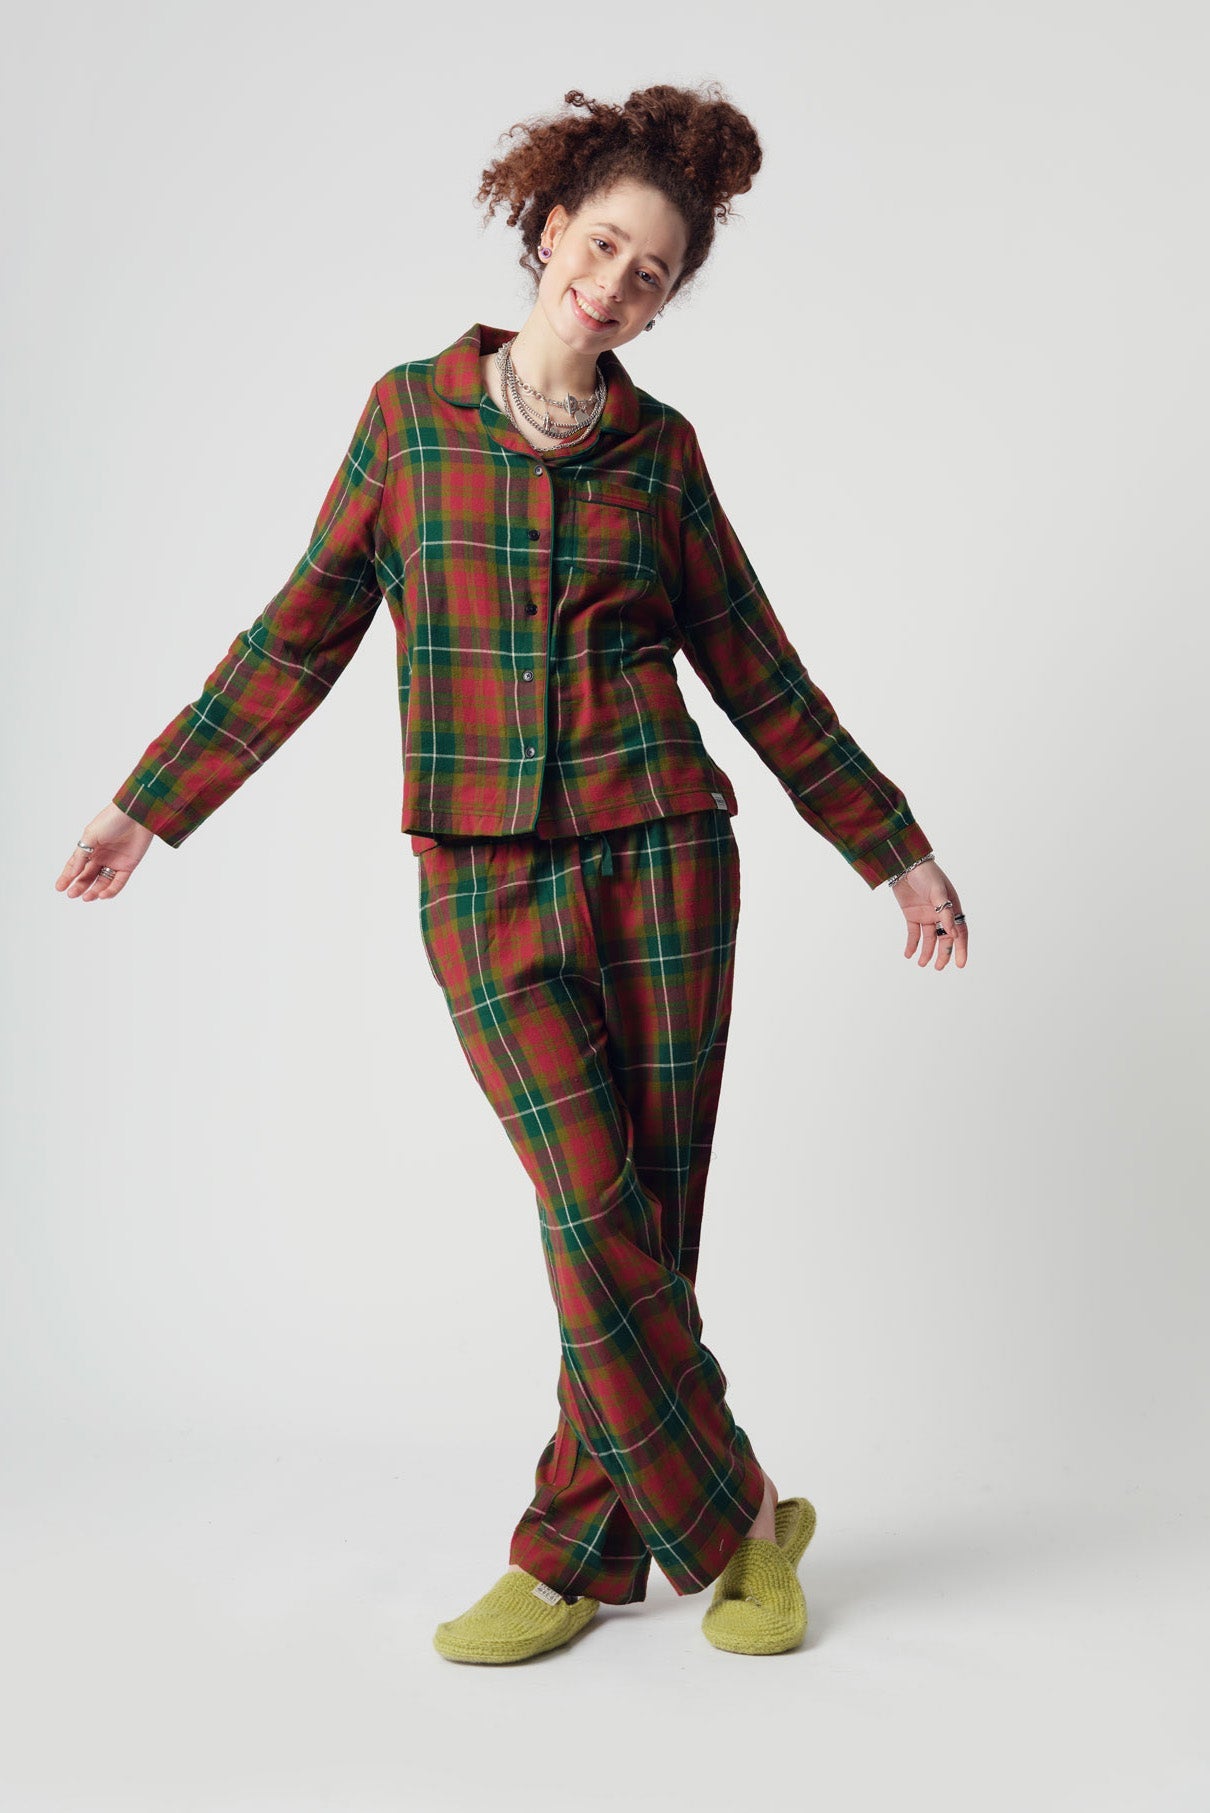 Buntes Pyjama Set JIM JAM aus 100% Bio-Baumwolle von Komodo